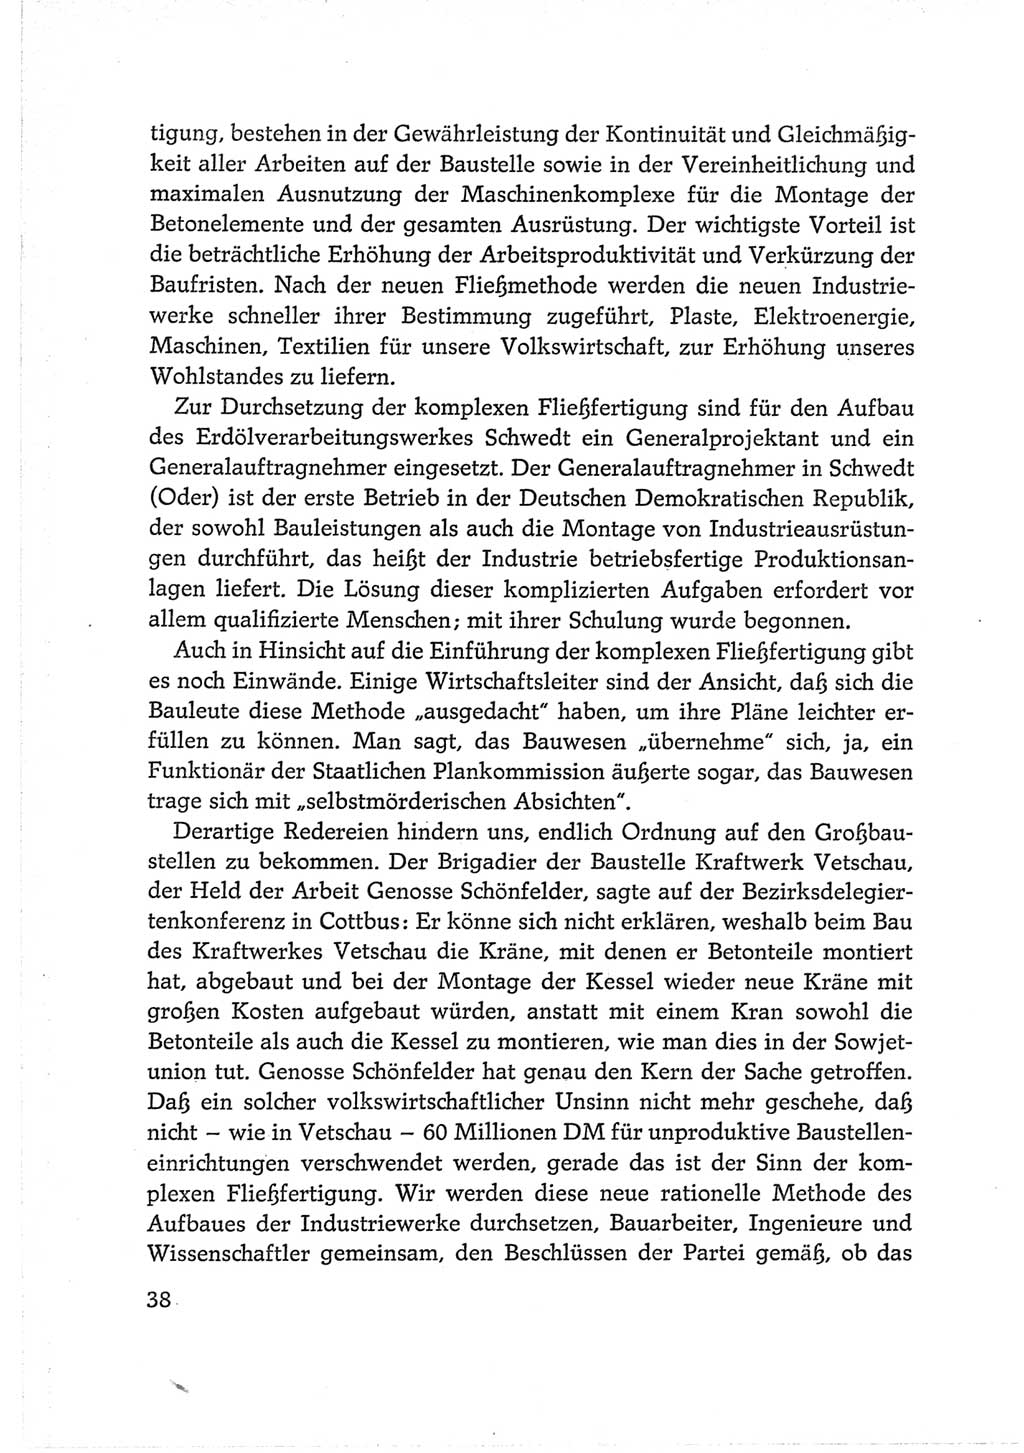 Protokoll der Verhandlungen des Ⅵ. Parteitages der Sozialistischen Einheitspartei Deutschlands (SED) [Deutsche Demokratische Republik (DDR)] 1963, Band Ⅱ, Seite 38 (Prot. Verh. Ⅵ. PT SED DDR 1963, Bd. Ⅱ, S. 38)